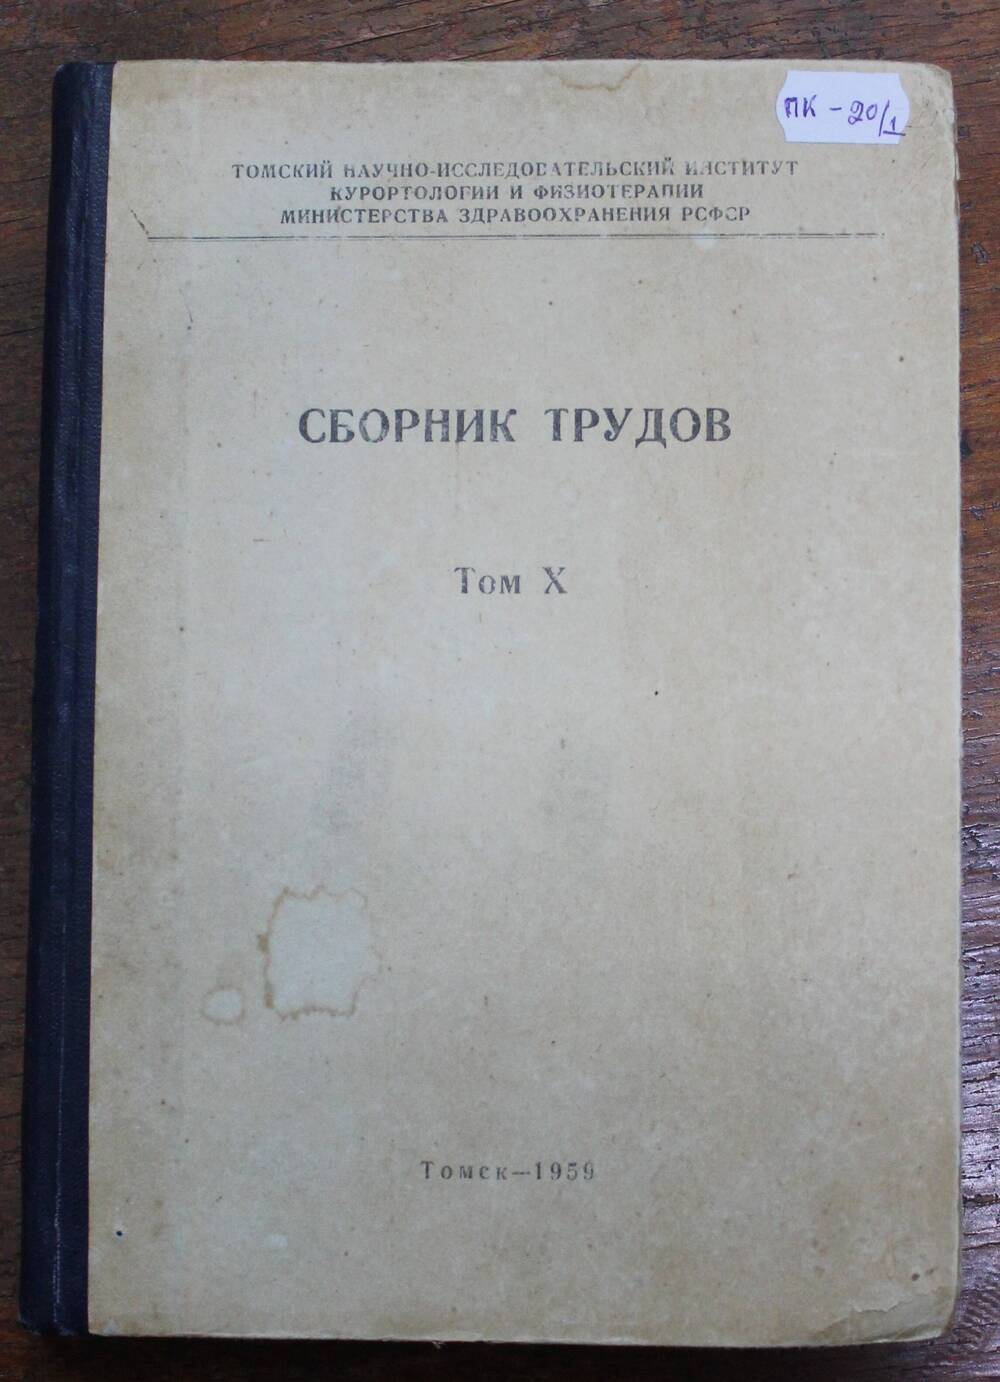 Книга Сборник трудов том X, под ред. проф. А.С. Саратикова, г. Томск, 1959г.